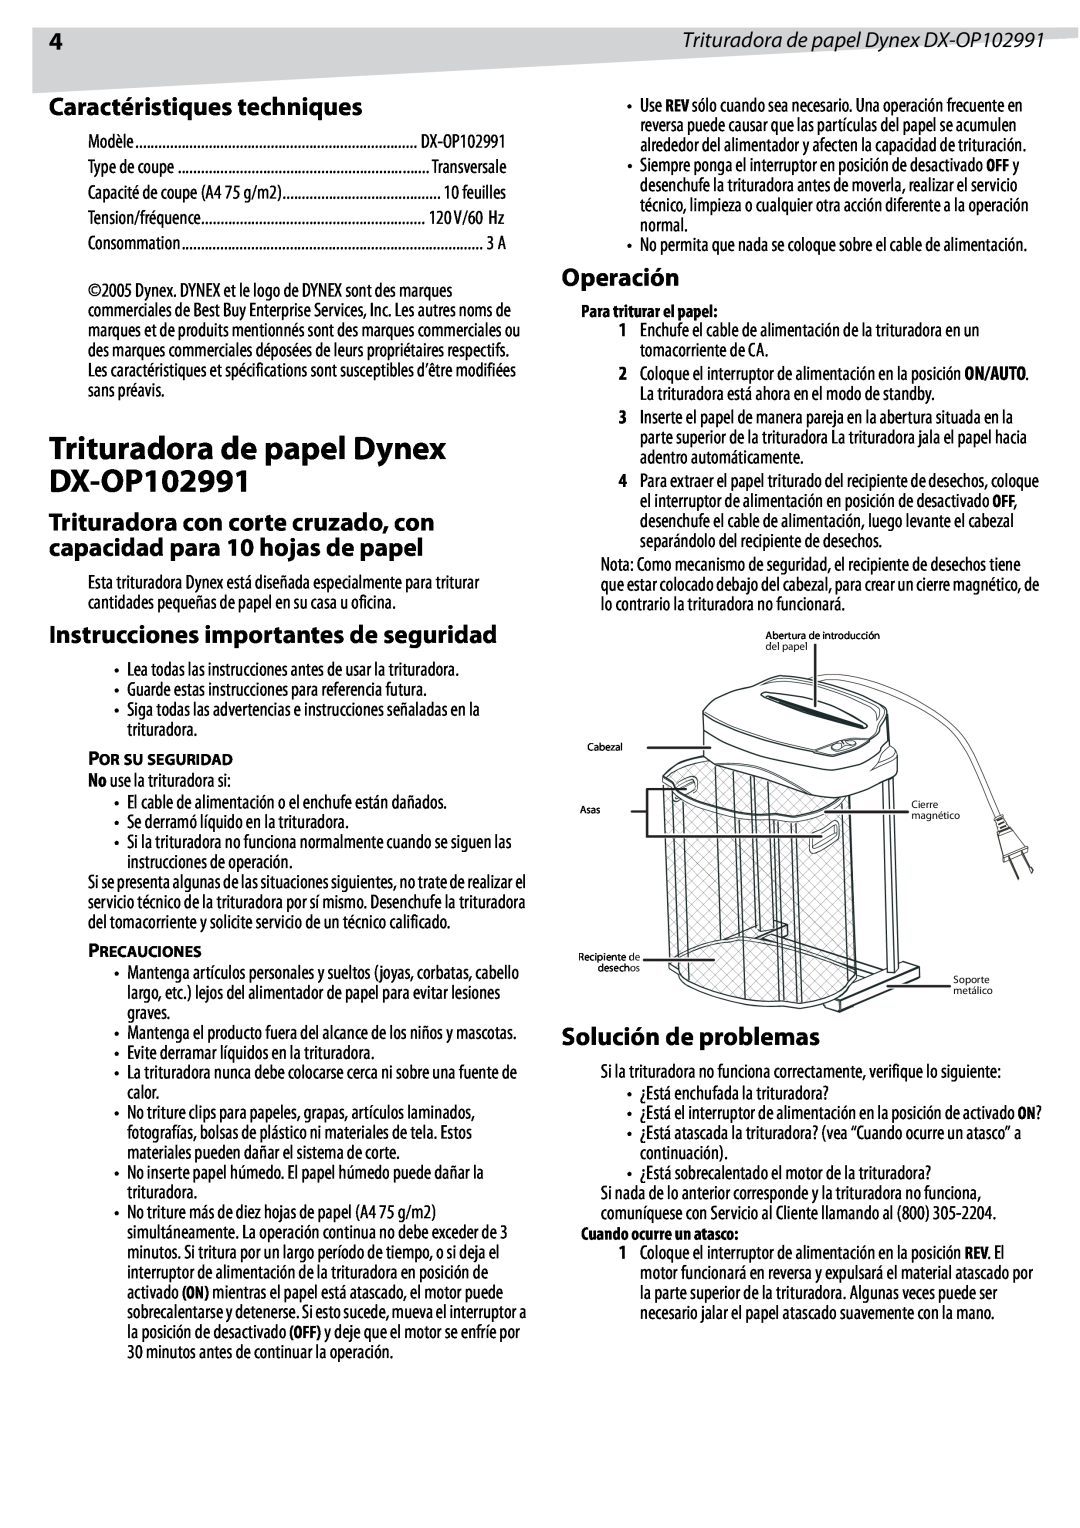 Dynex manual Trituradora de papel Dynex DX-OP102991, Caractéristiques techniques, Instrucciones importantes de seguridad 